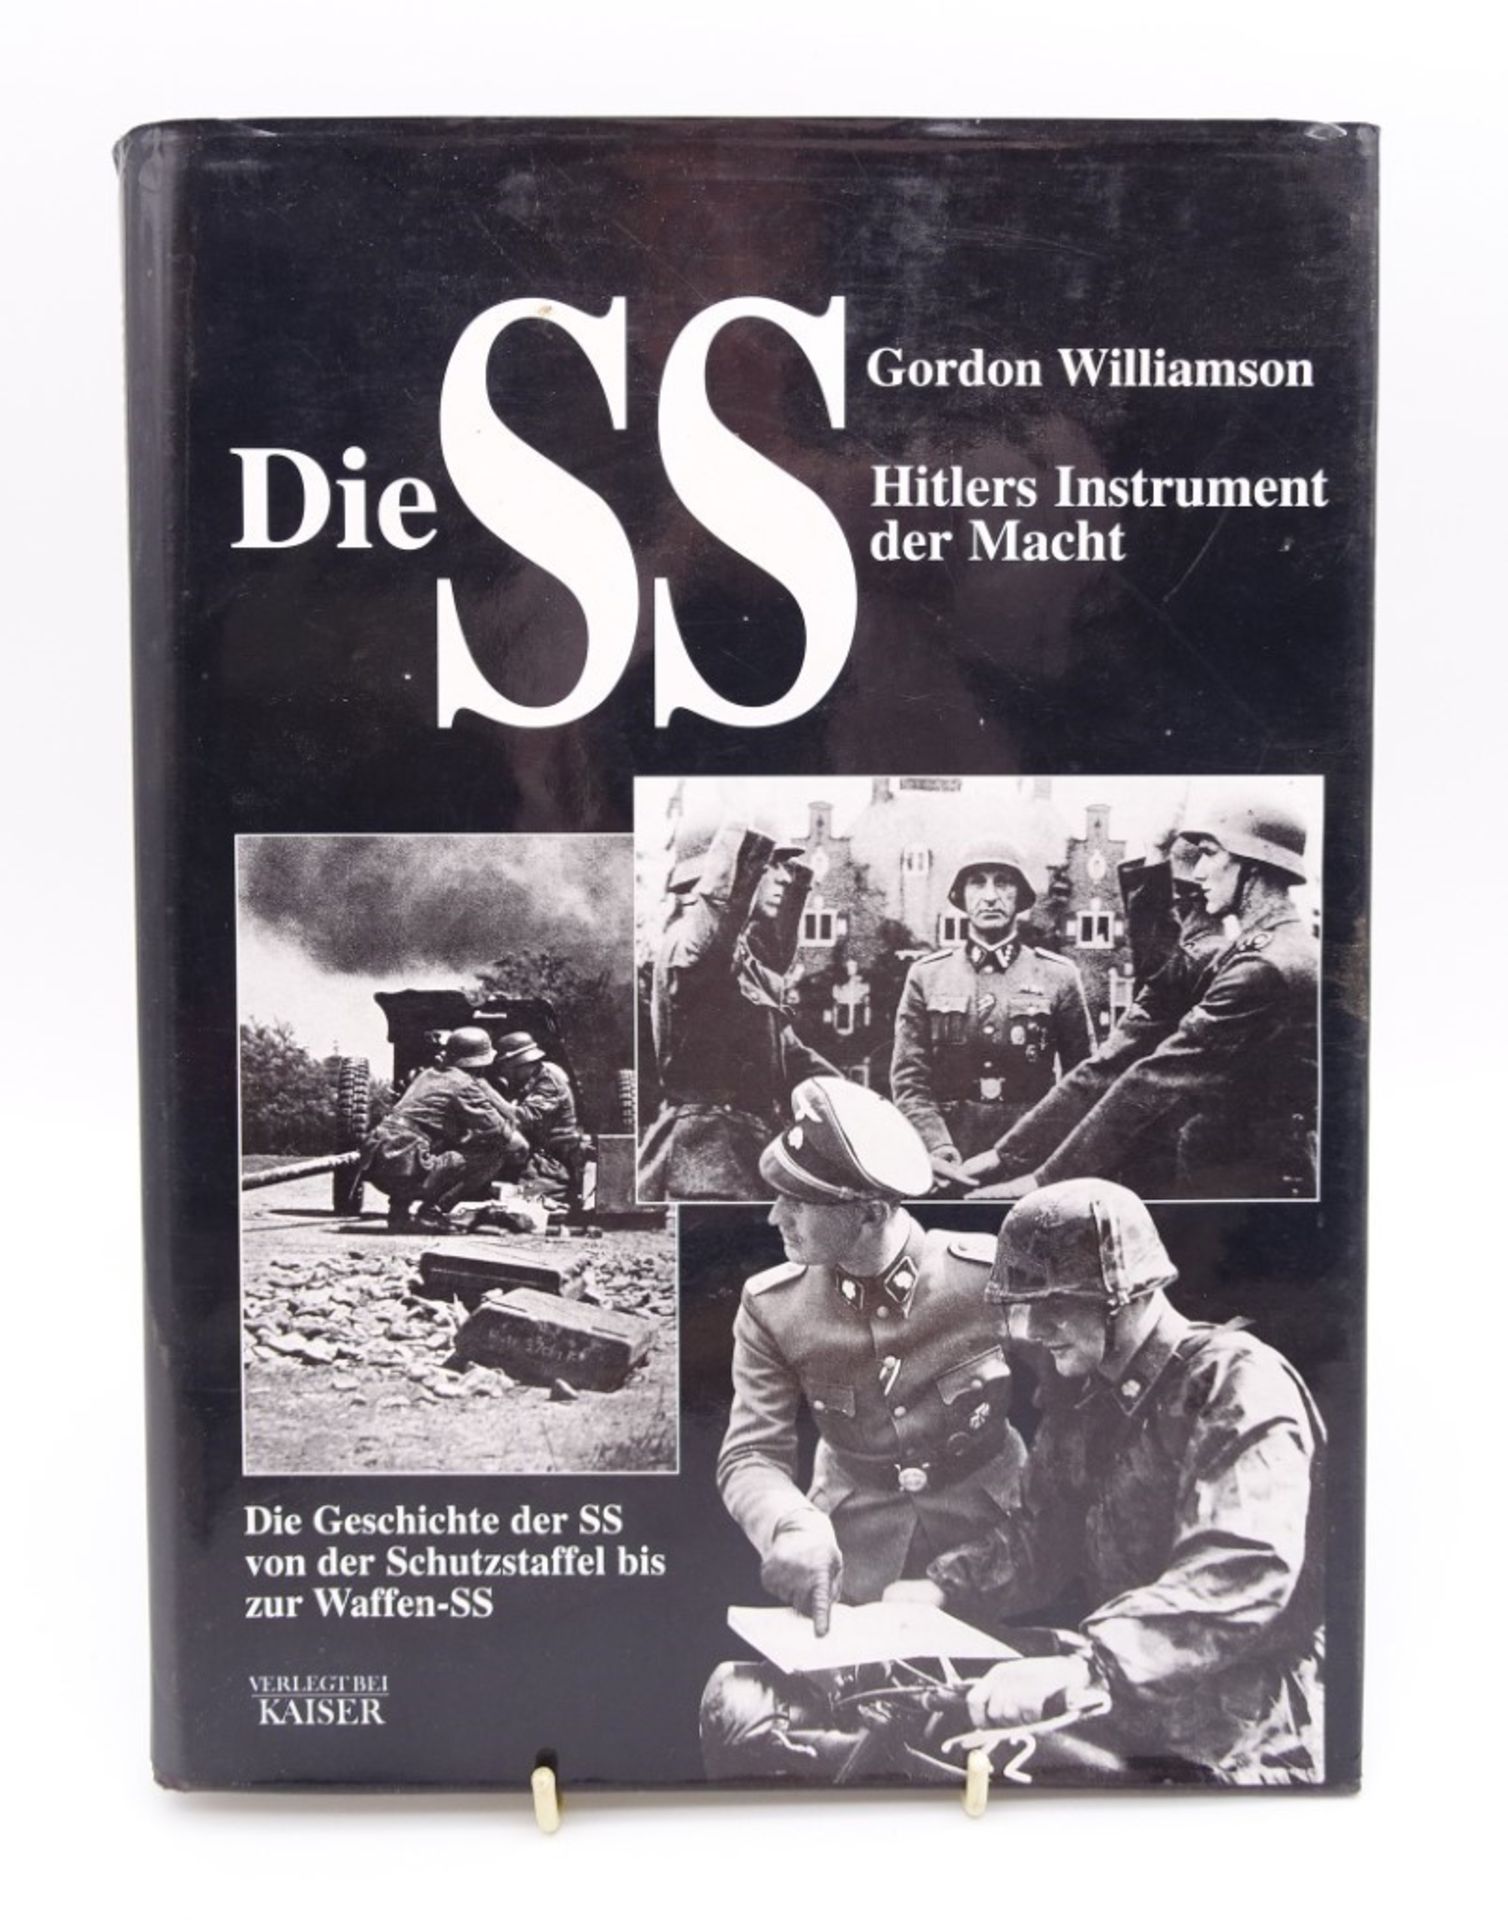 Gordon Williamson, Die SS. Hitlers Instrument der Macht, Neuer Kaiser Verlag Klagenfurt, 1998, ca. 